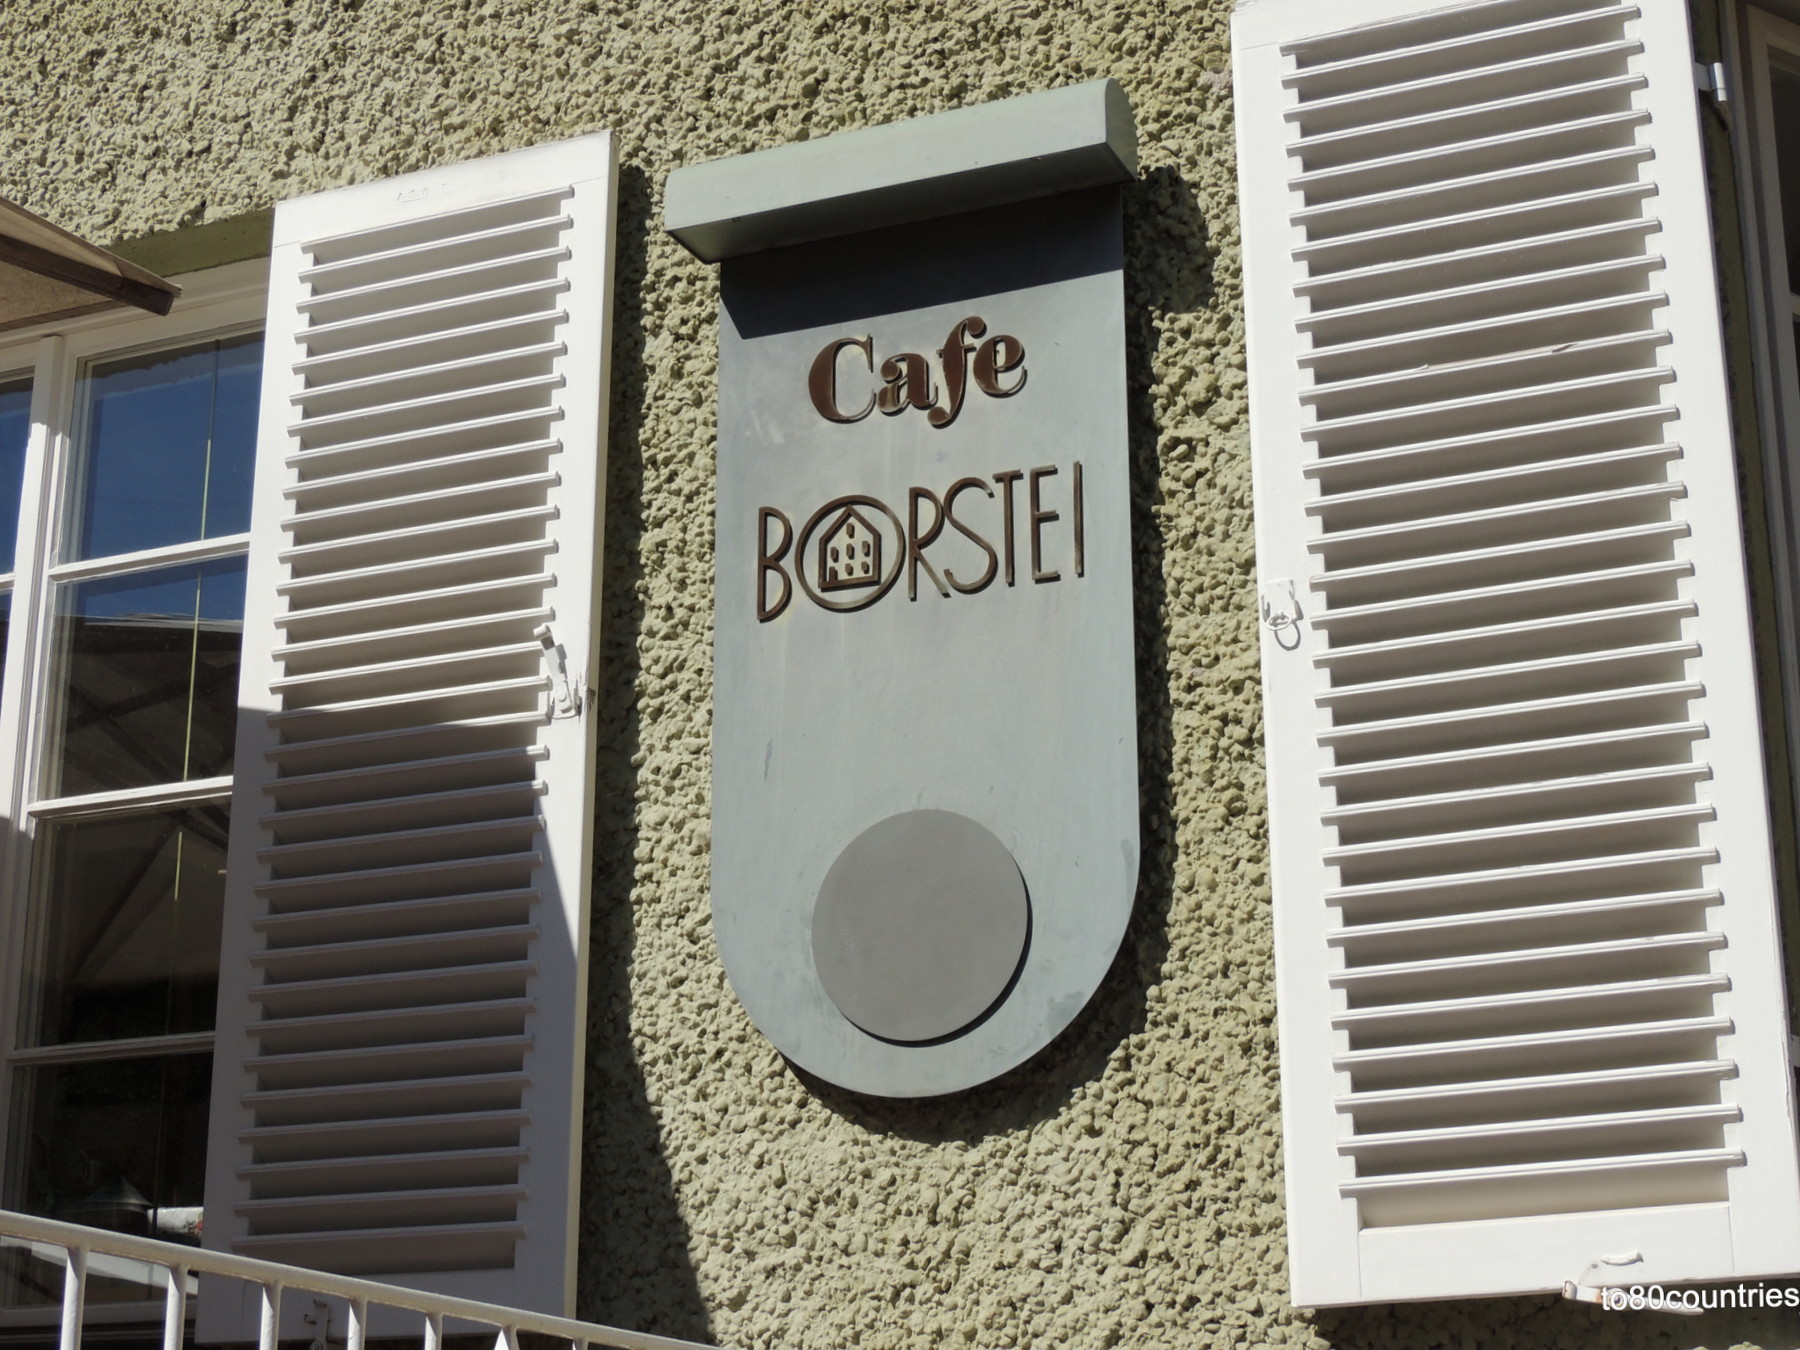 Café in der Borstei - München